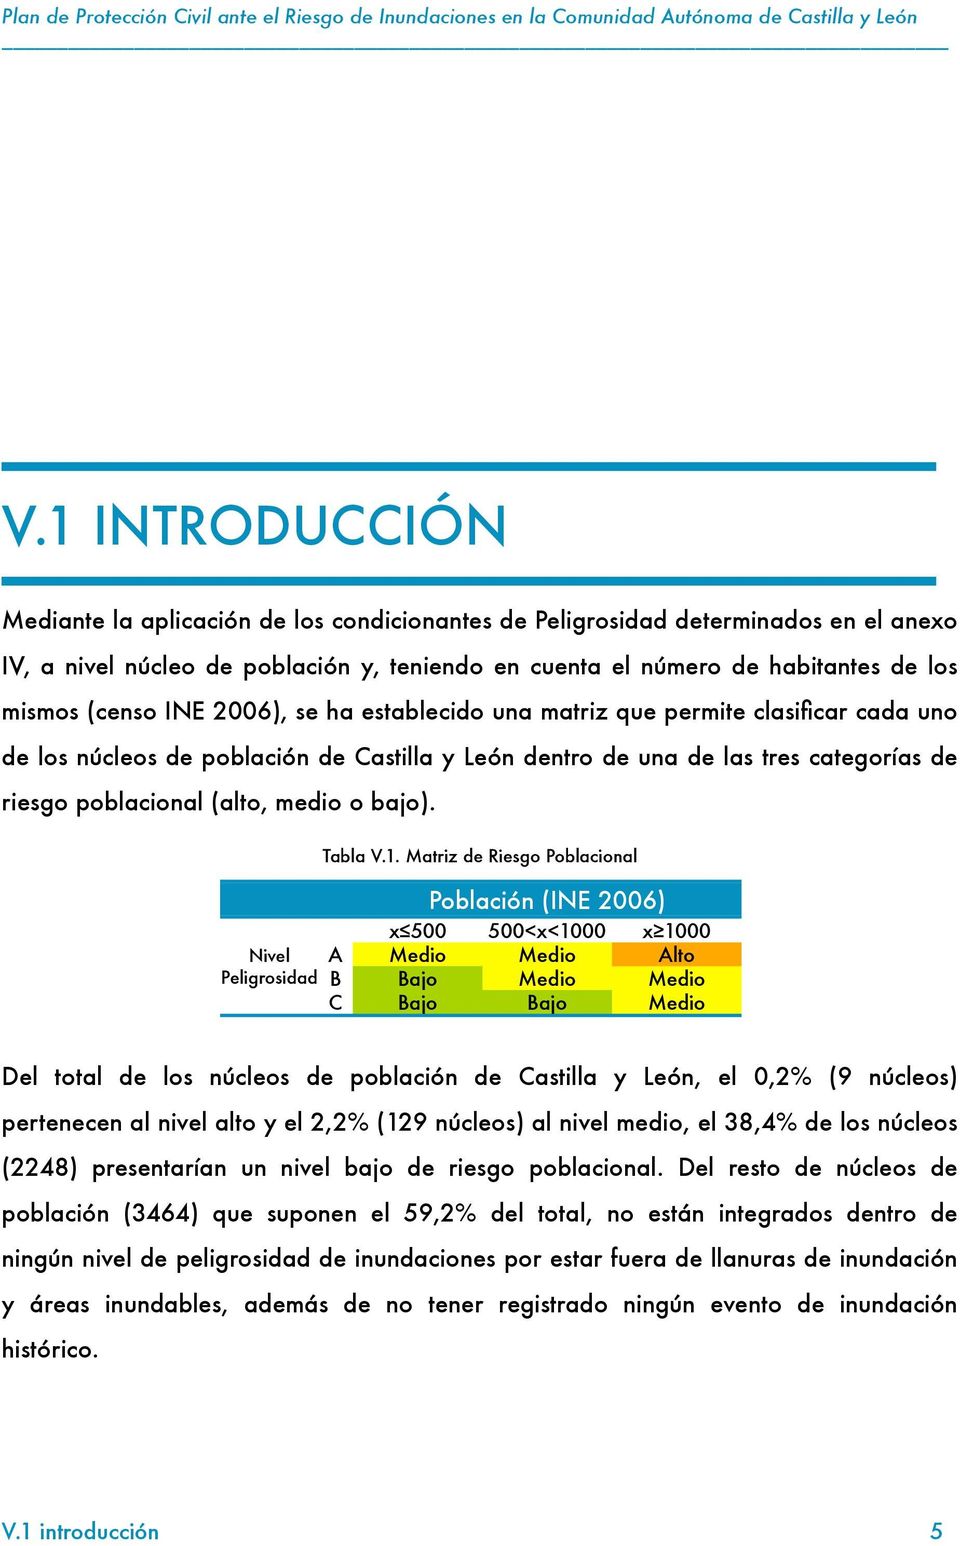 INE 2006), se ha establecido una matriz que permite clasificar cada uno de los núcleos de población de Castilla y León dentro de una de las tres categorías de riesgo poblacional (alto, medio o bajo).